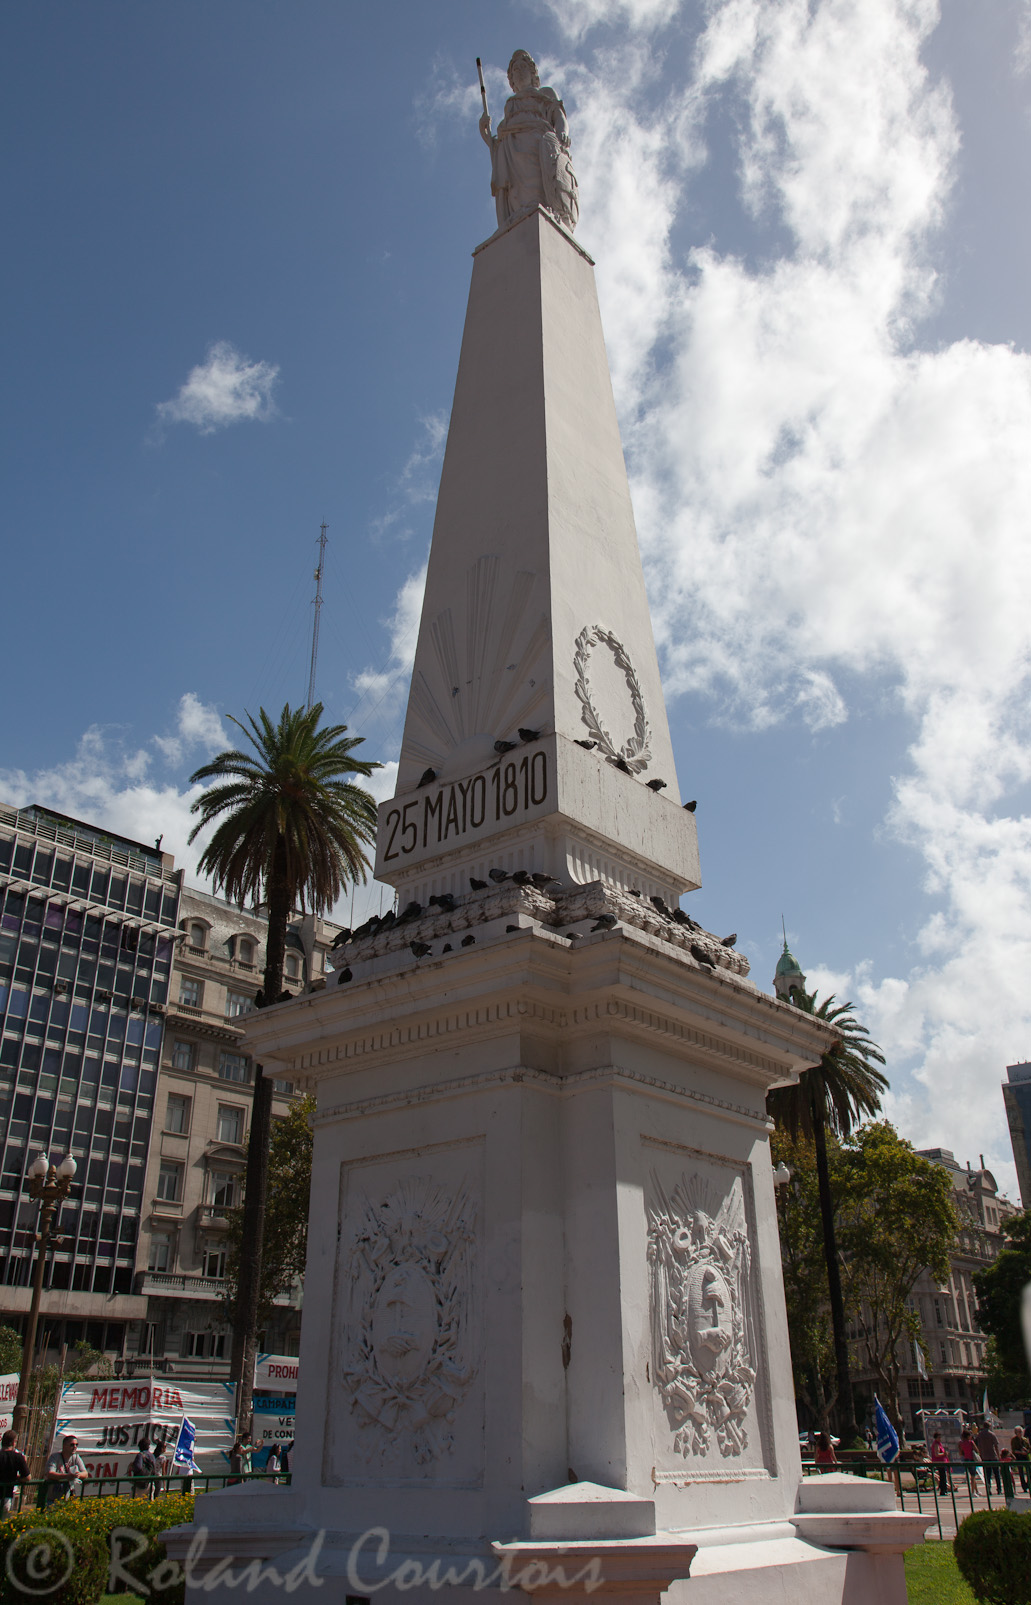 Au centre de Place de Mai, monument dédié à l'indépendance proclamée le 25 mai 1810